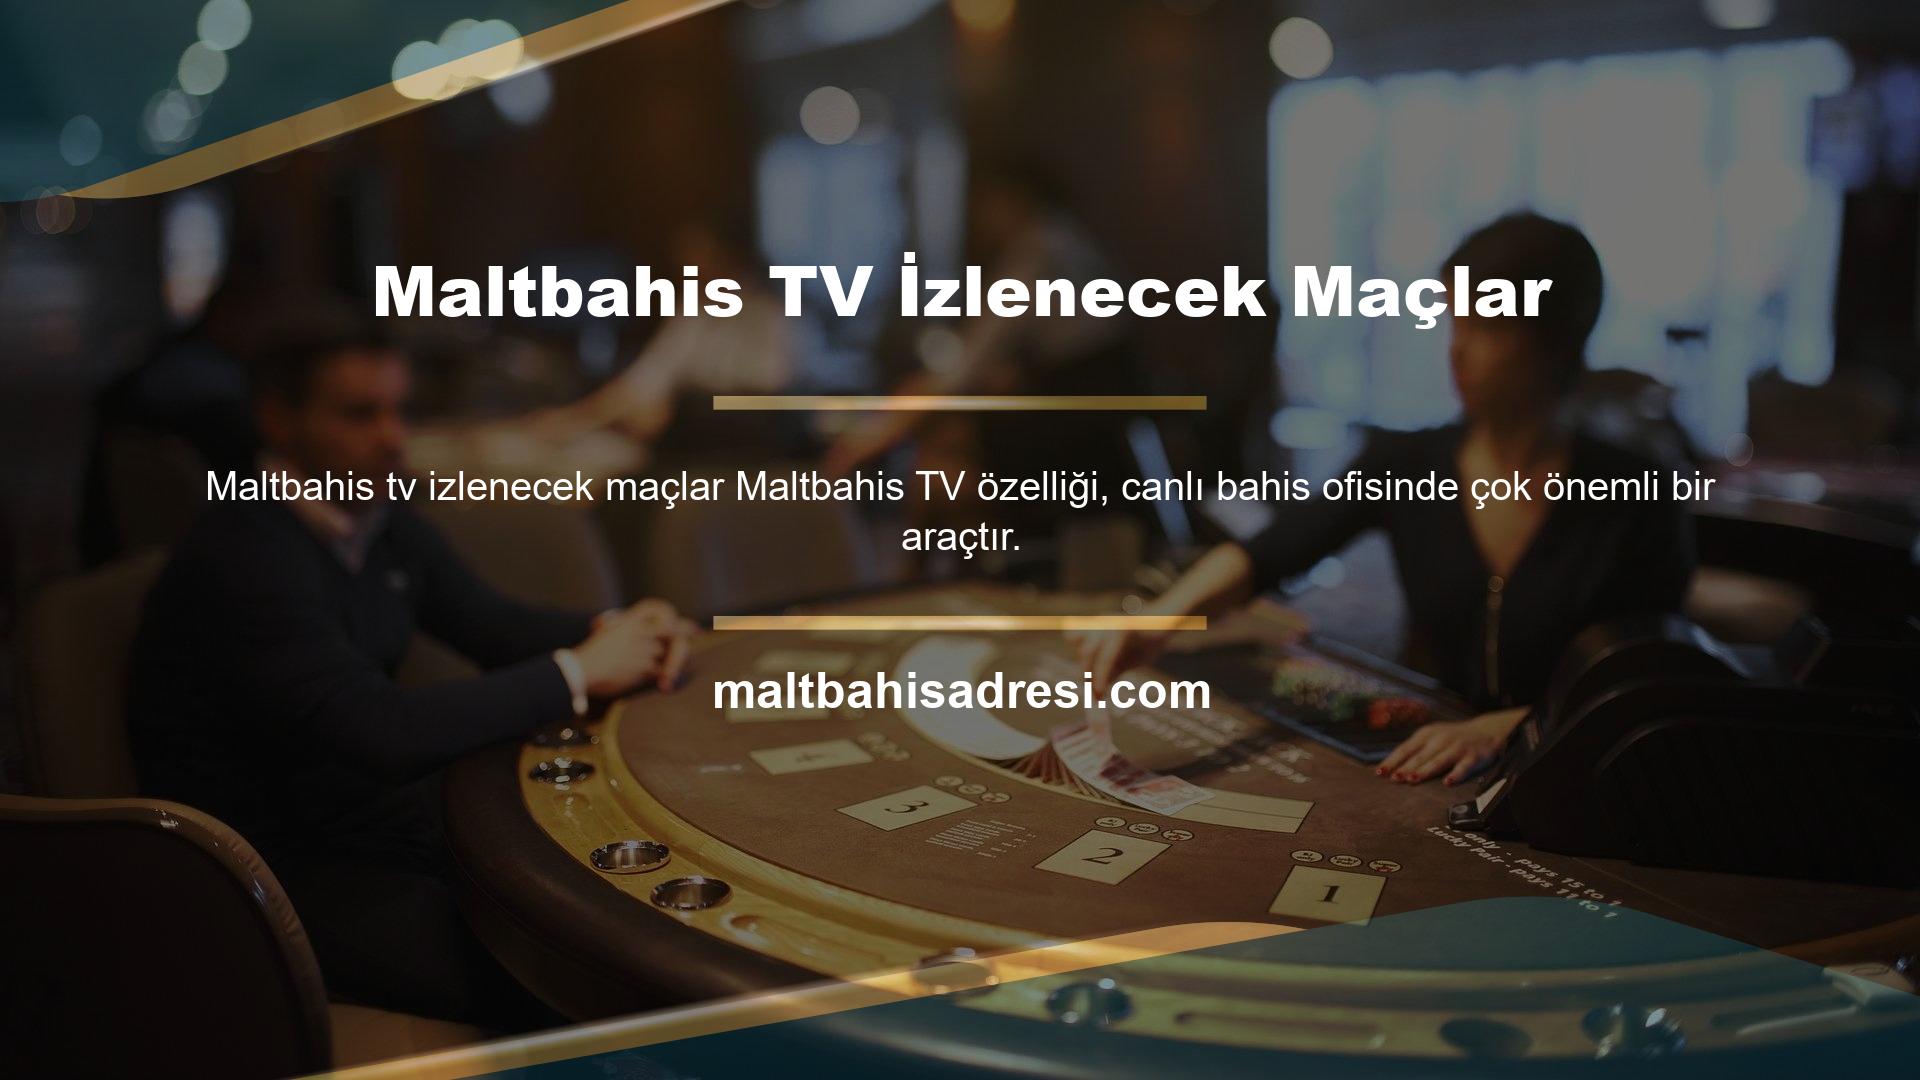 Avrupa oyun pazarının en büyük kurumsal oyuncularından biri olan Maltbahis tarafından işletilen bir bahis sitesi